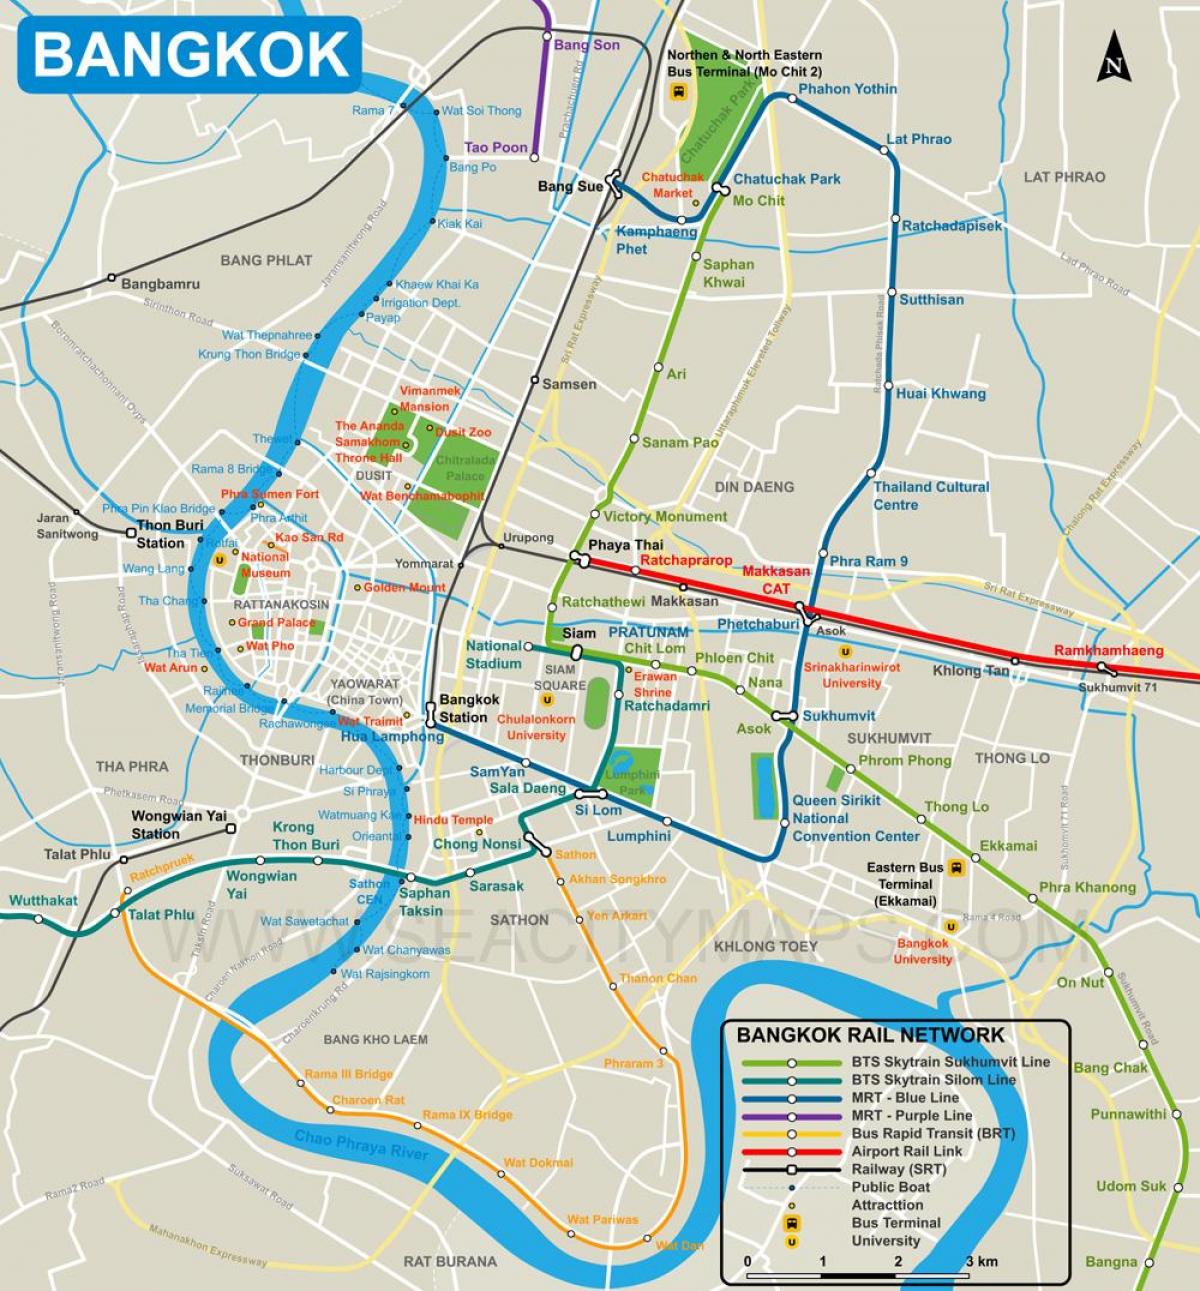 зураг бангкок хотын төв